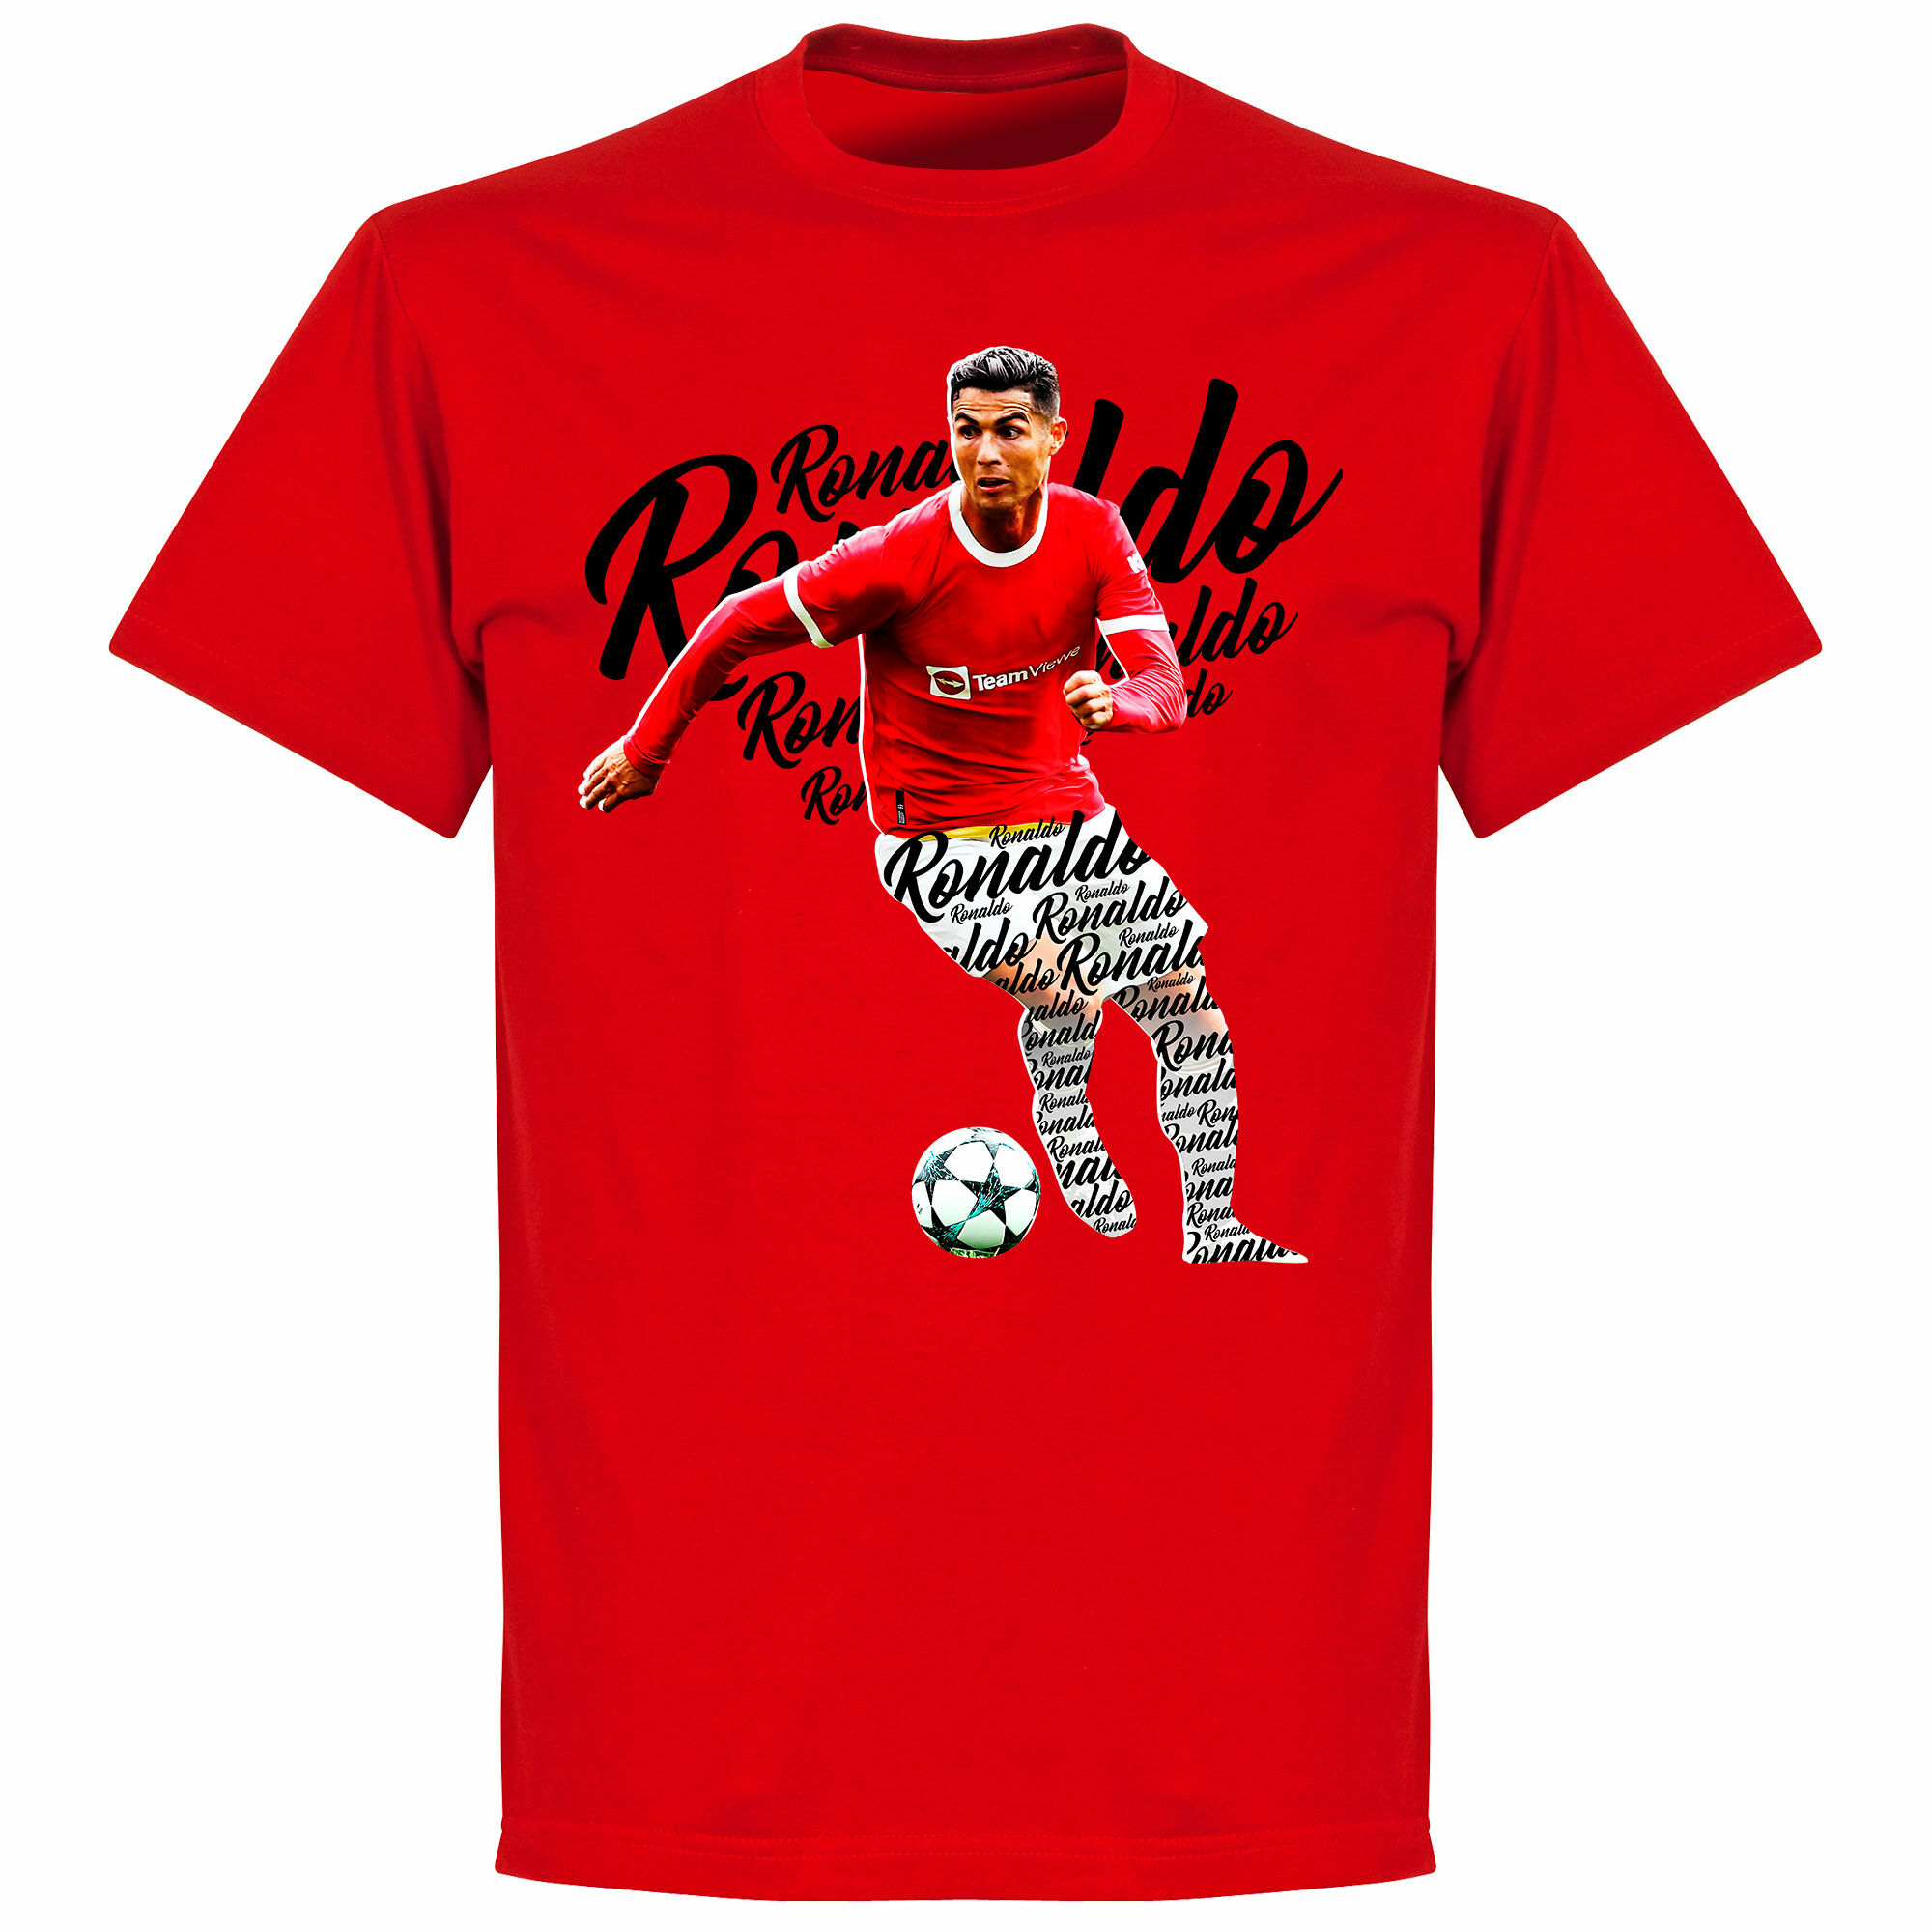 Manchester United - Tričko "Script" dětské - červené, Ronaldo